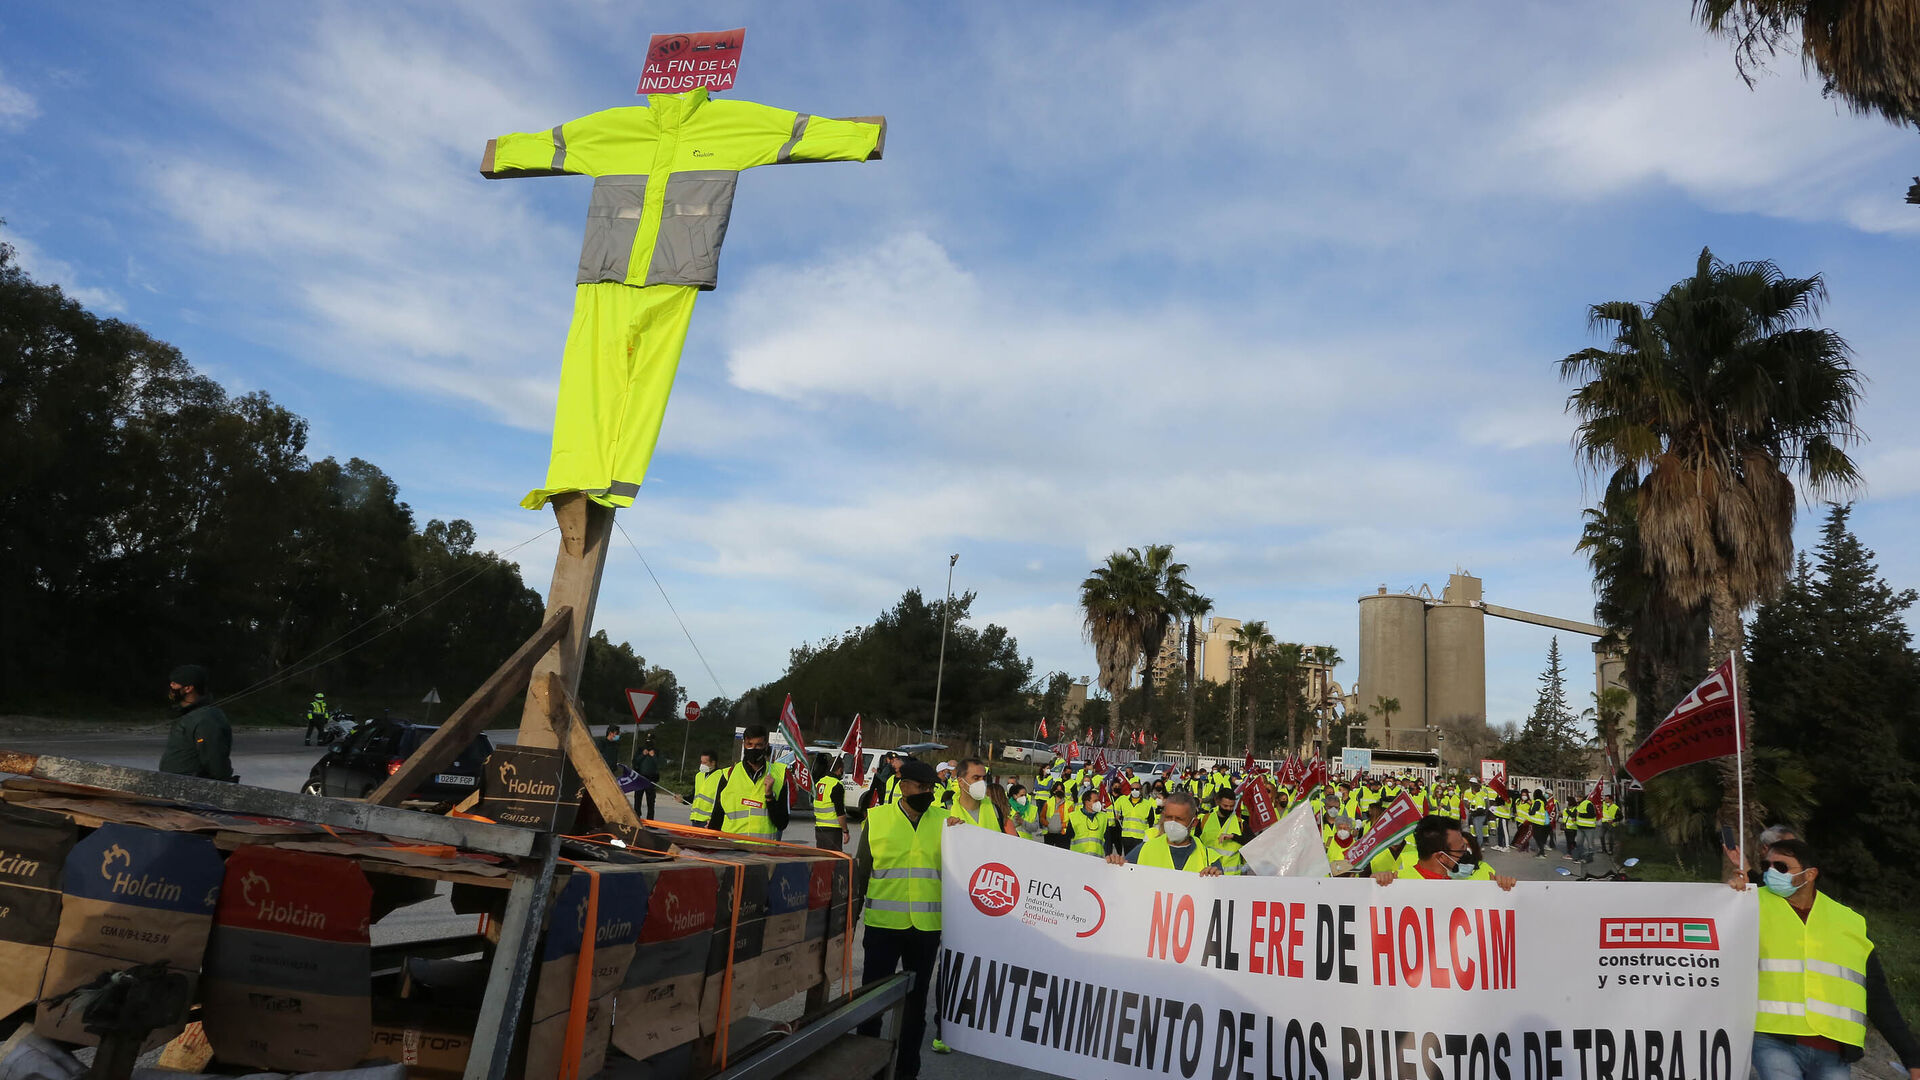 Marcha de los trabajadores contra el ERE de Holcim en Jerez